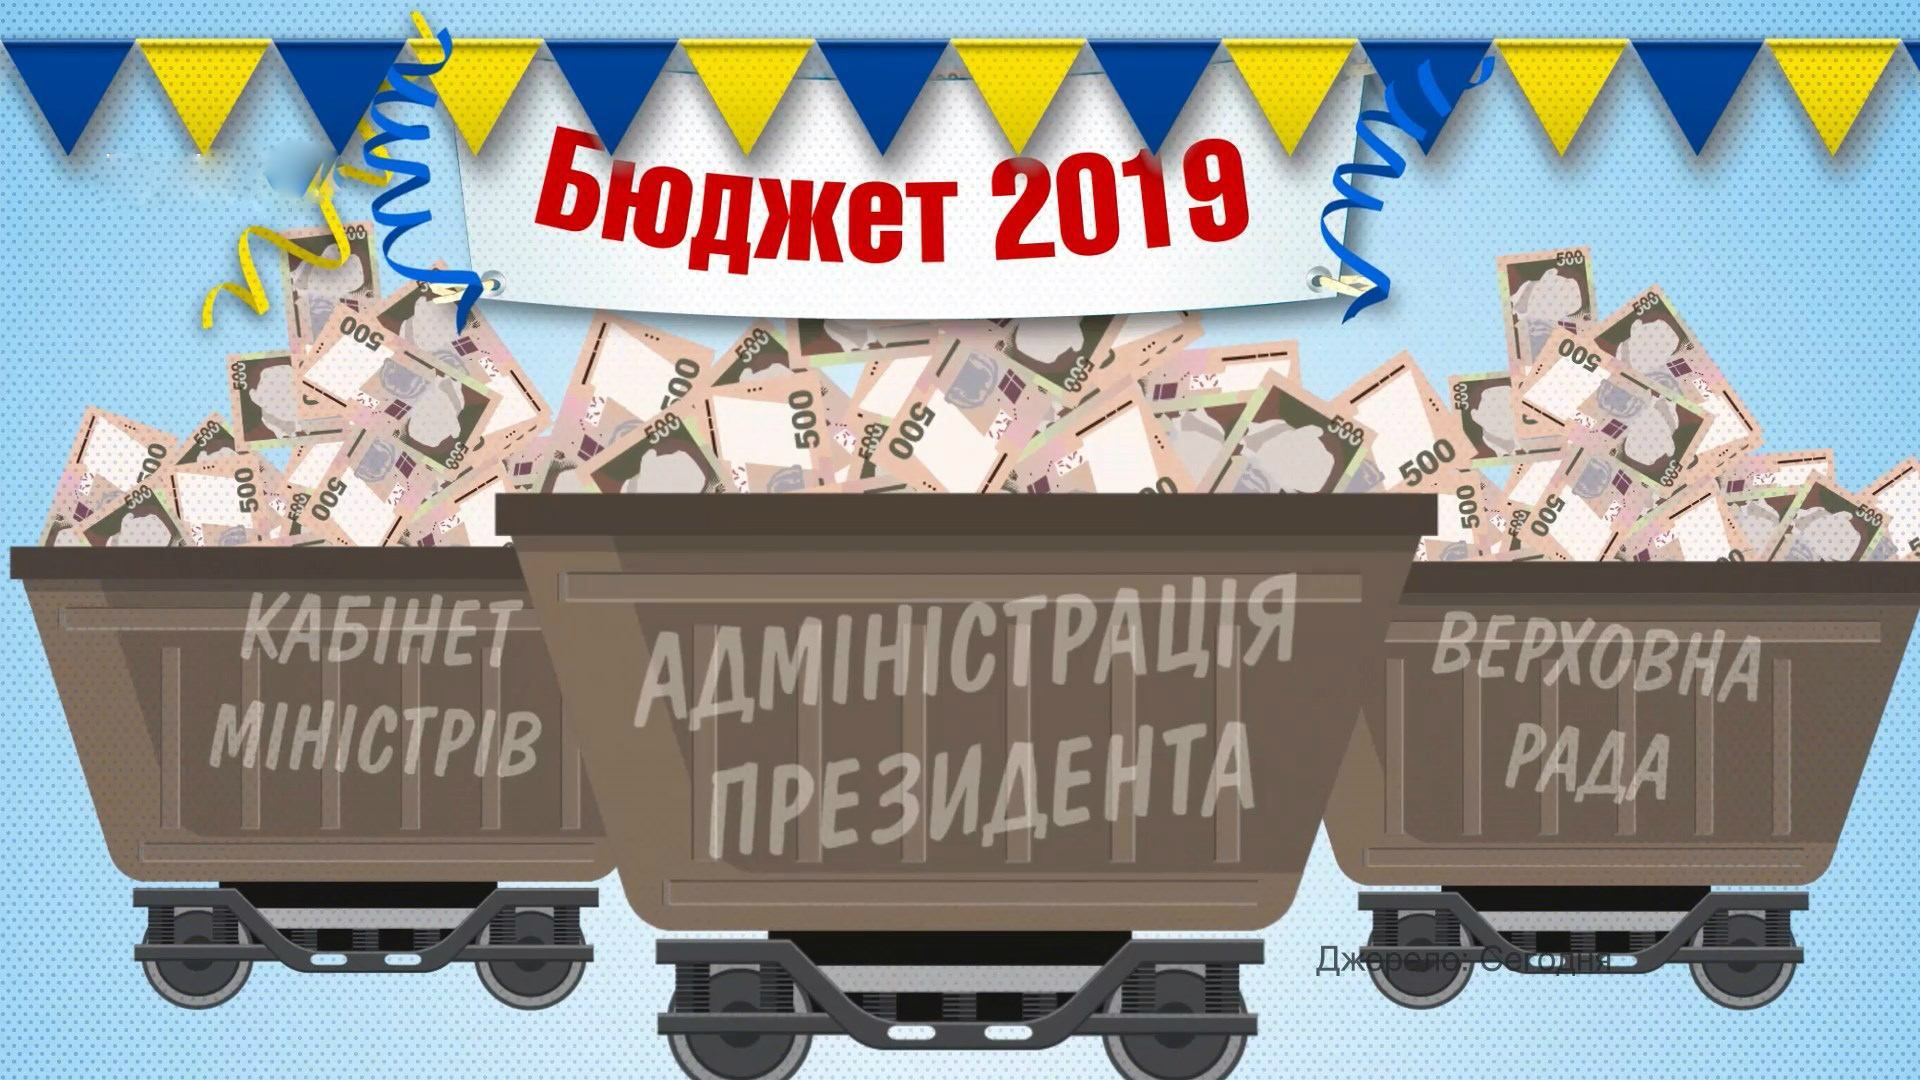 Сколько заплатят украинцы за содержание власти в 2019 году: огромная сумма